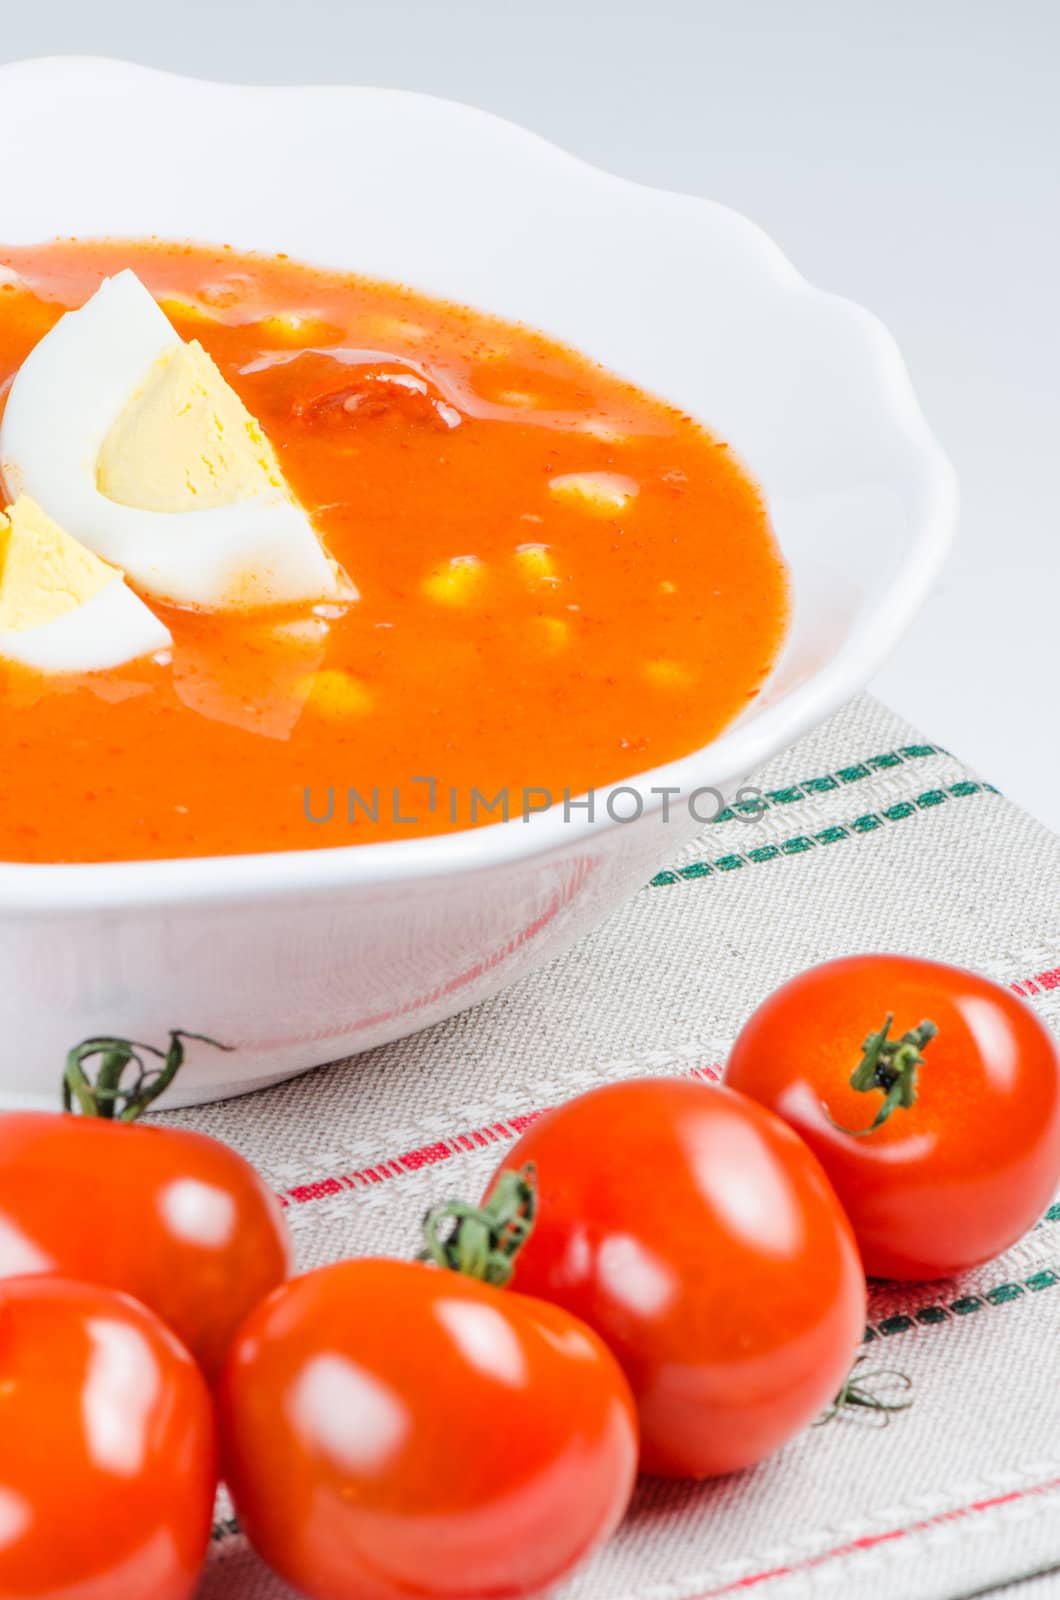 Tomato soup with eggs in white bowl on napkin  by Nanisimova